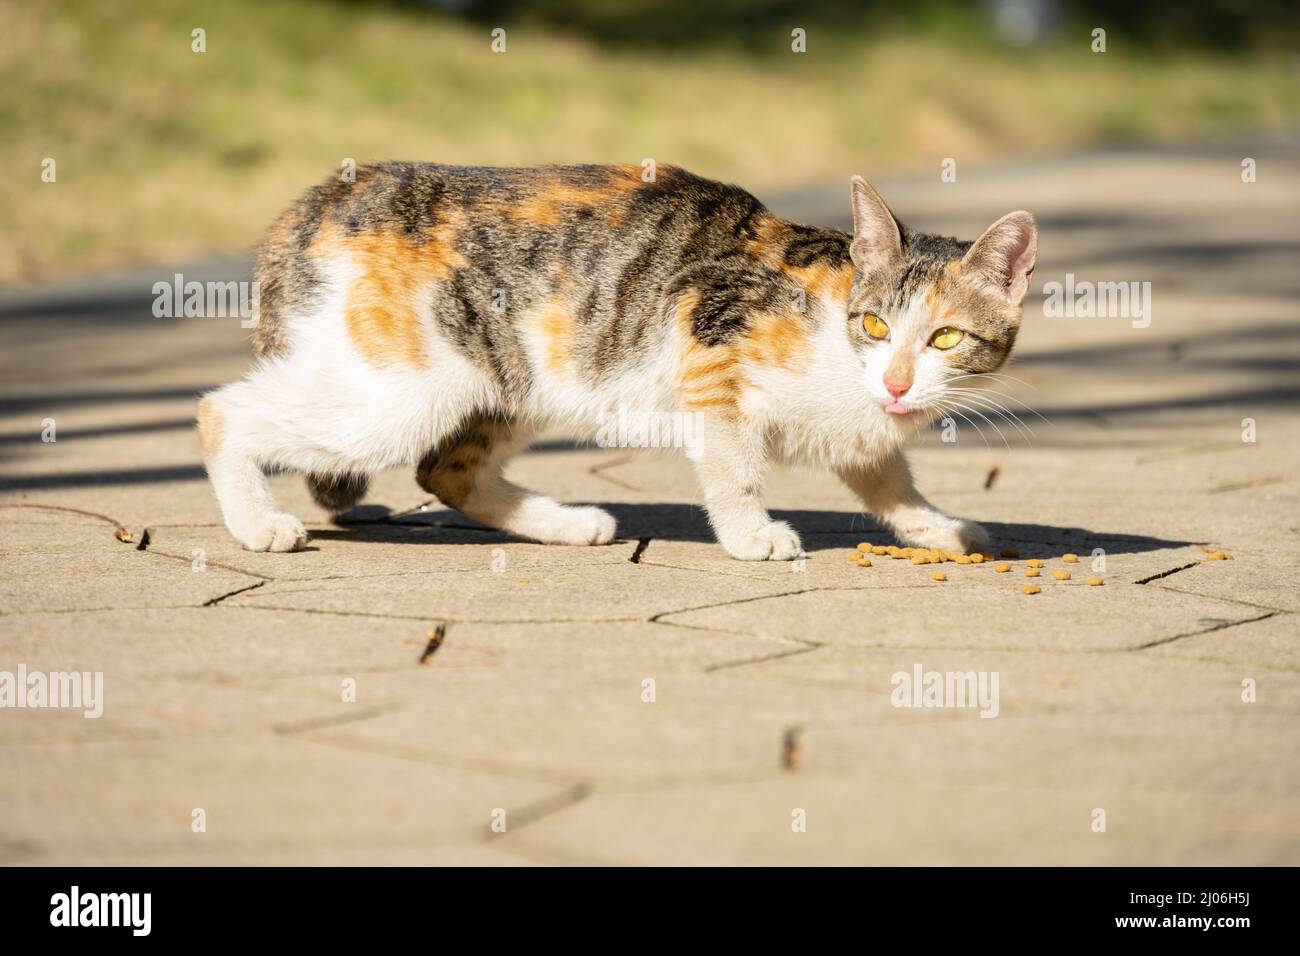 un chat sauvage mangeant de la nourriture sur le sol Banque D'Images